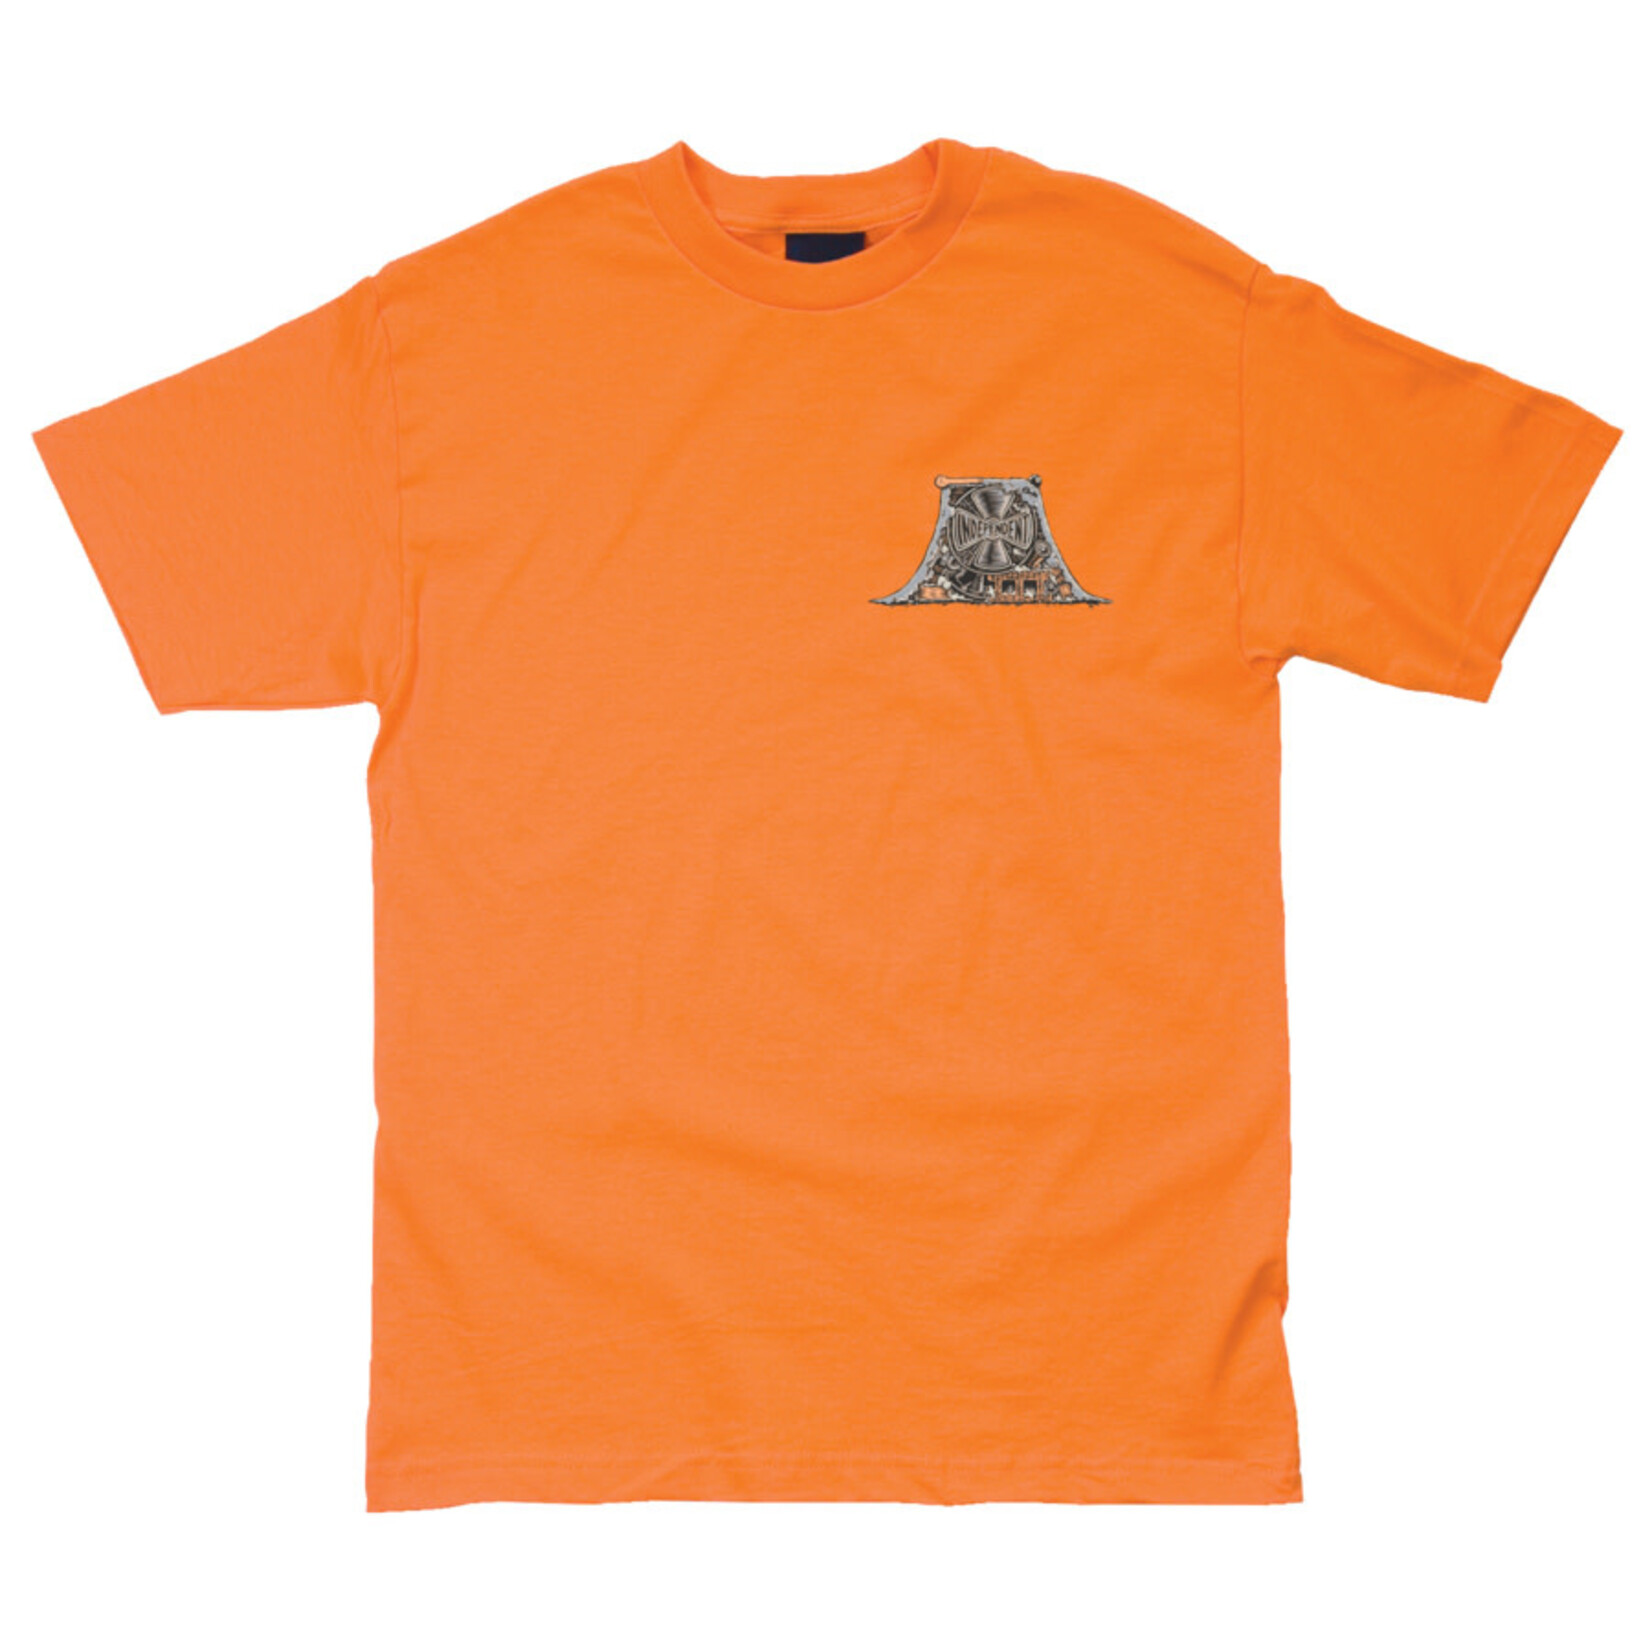 Independent Independent Crust S/S Men's T-Shirt - Orange - S -